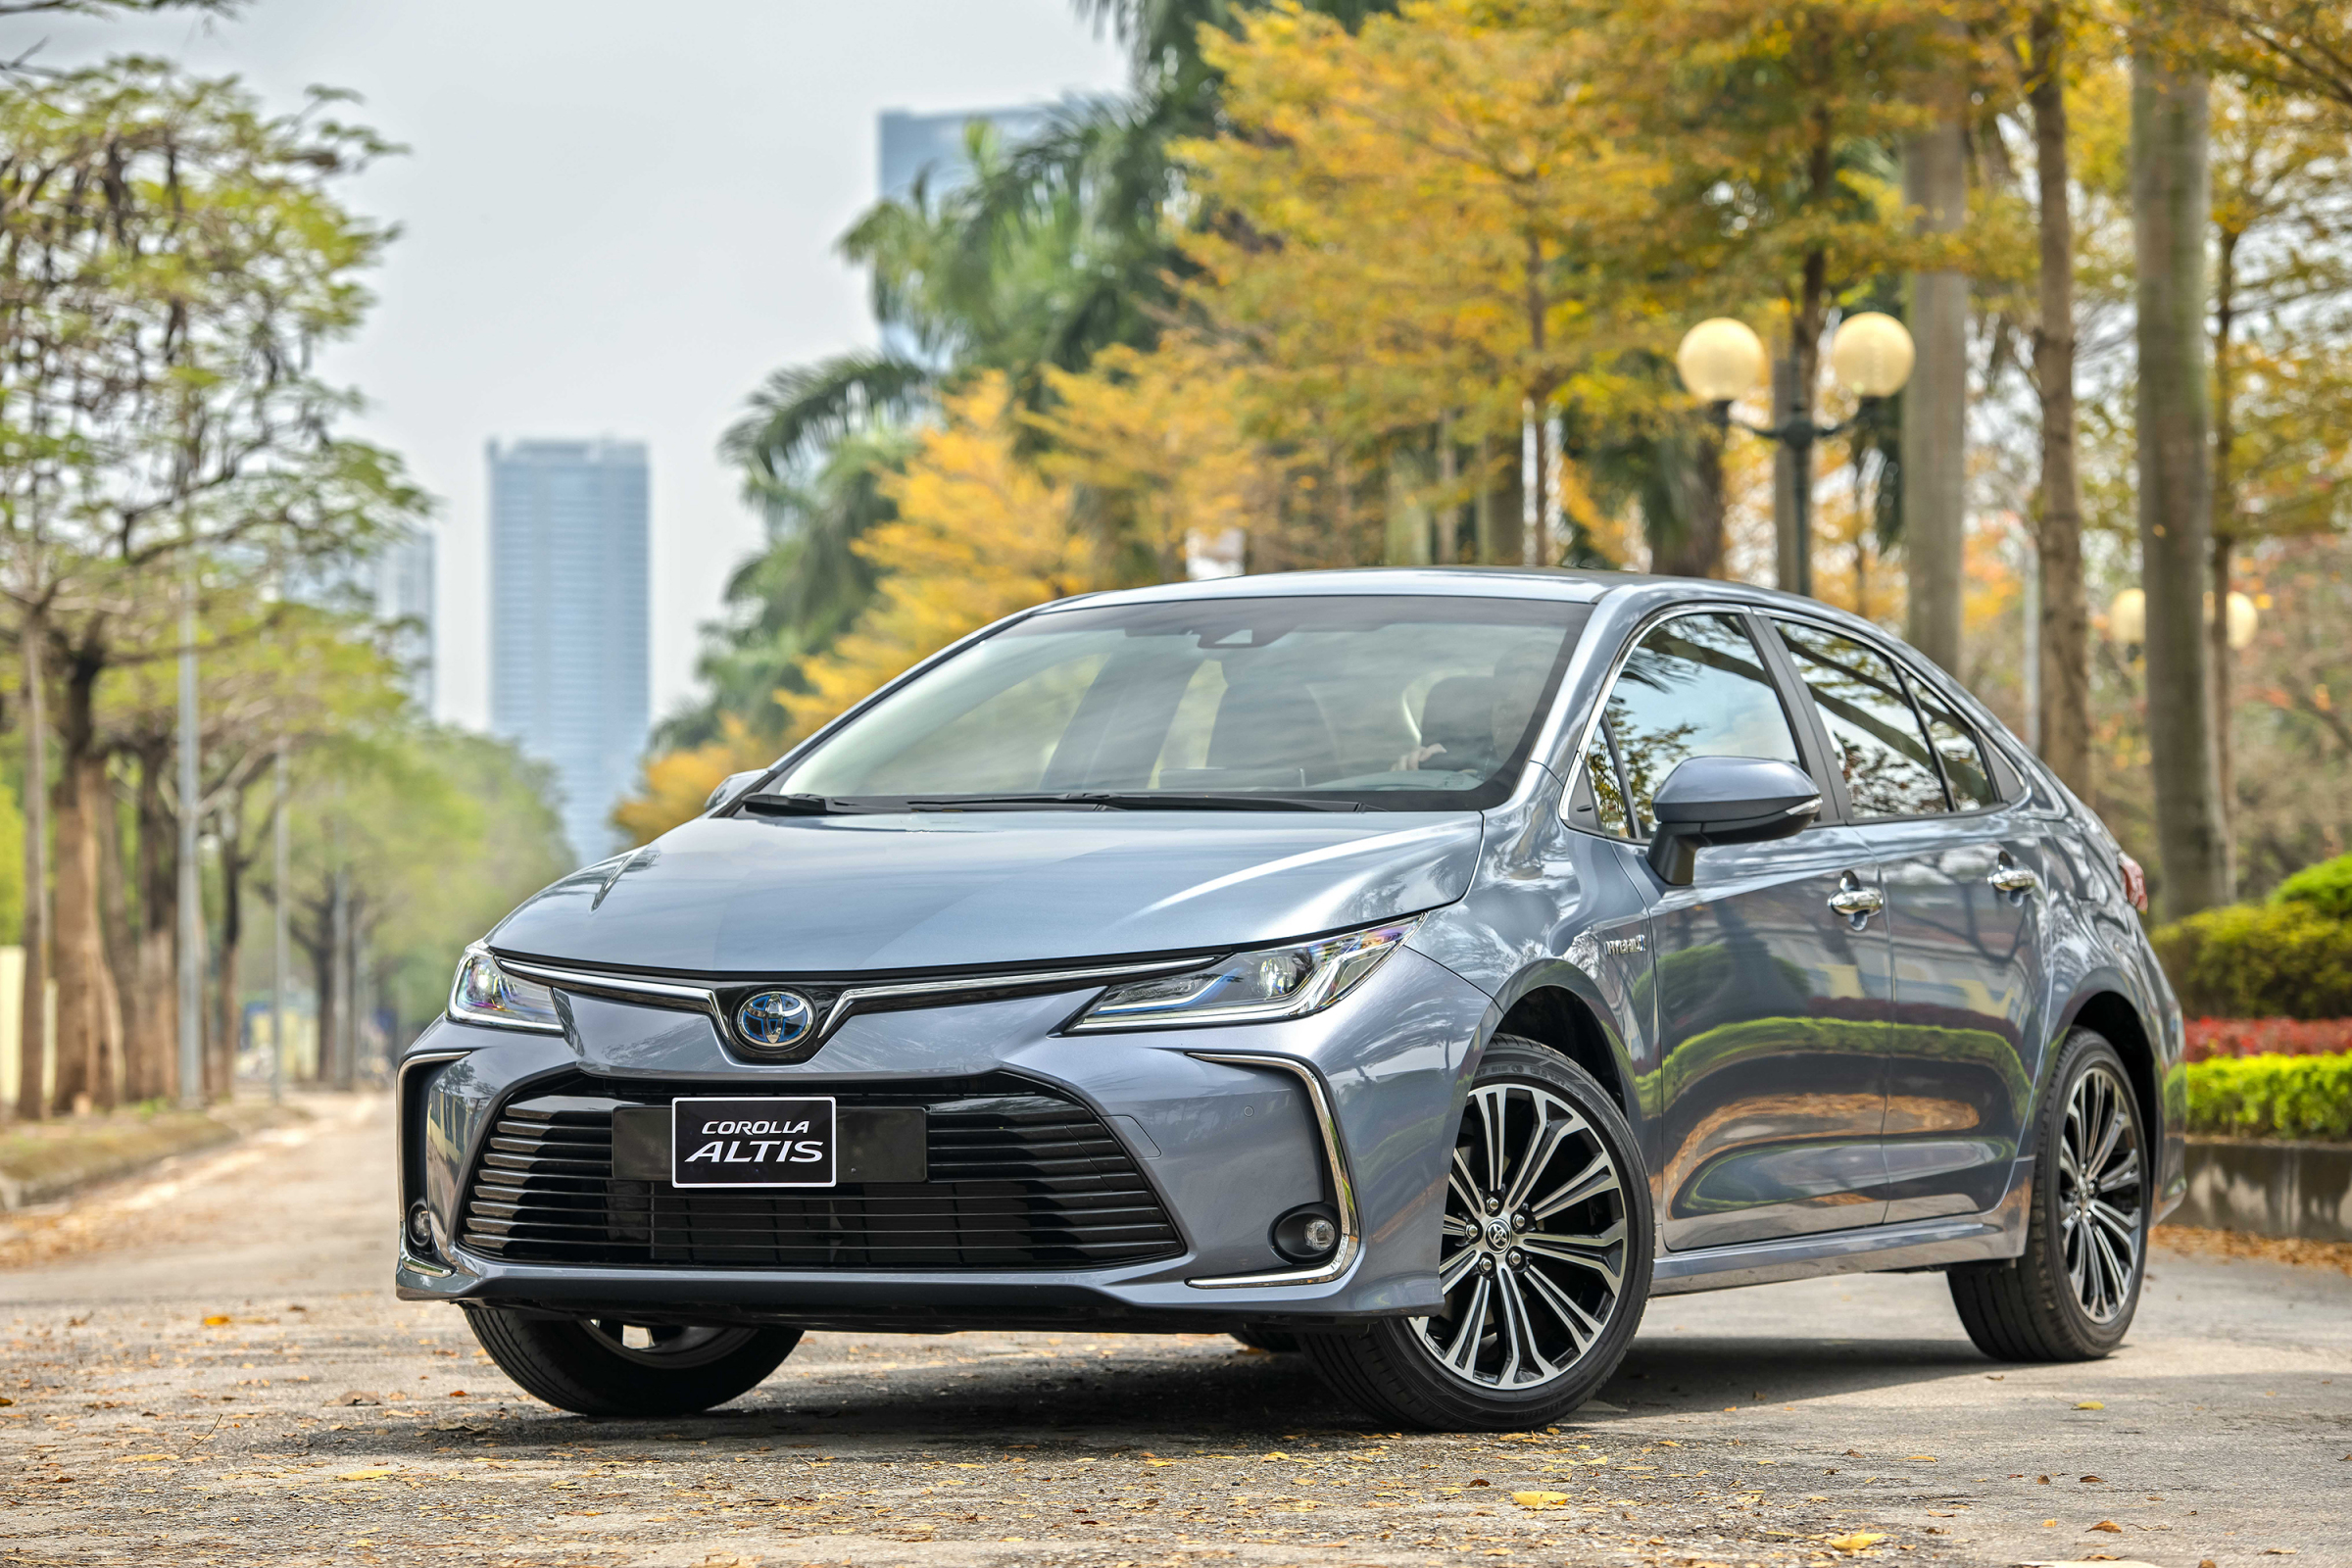 TƯ VẤN : Thay lốp xe Toyota Atlis chính hãng , giá tốt ở Đồng Nai.